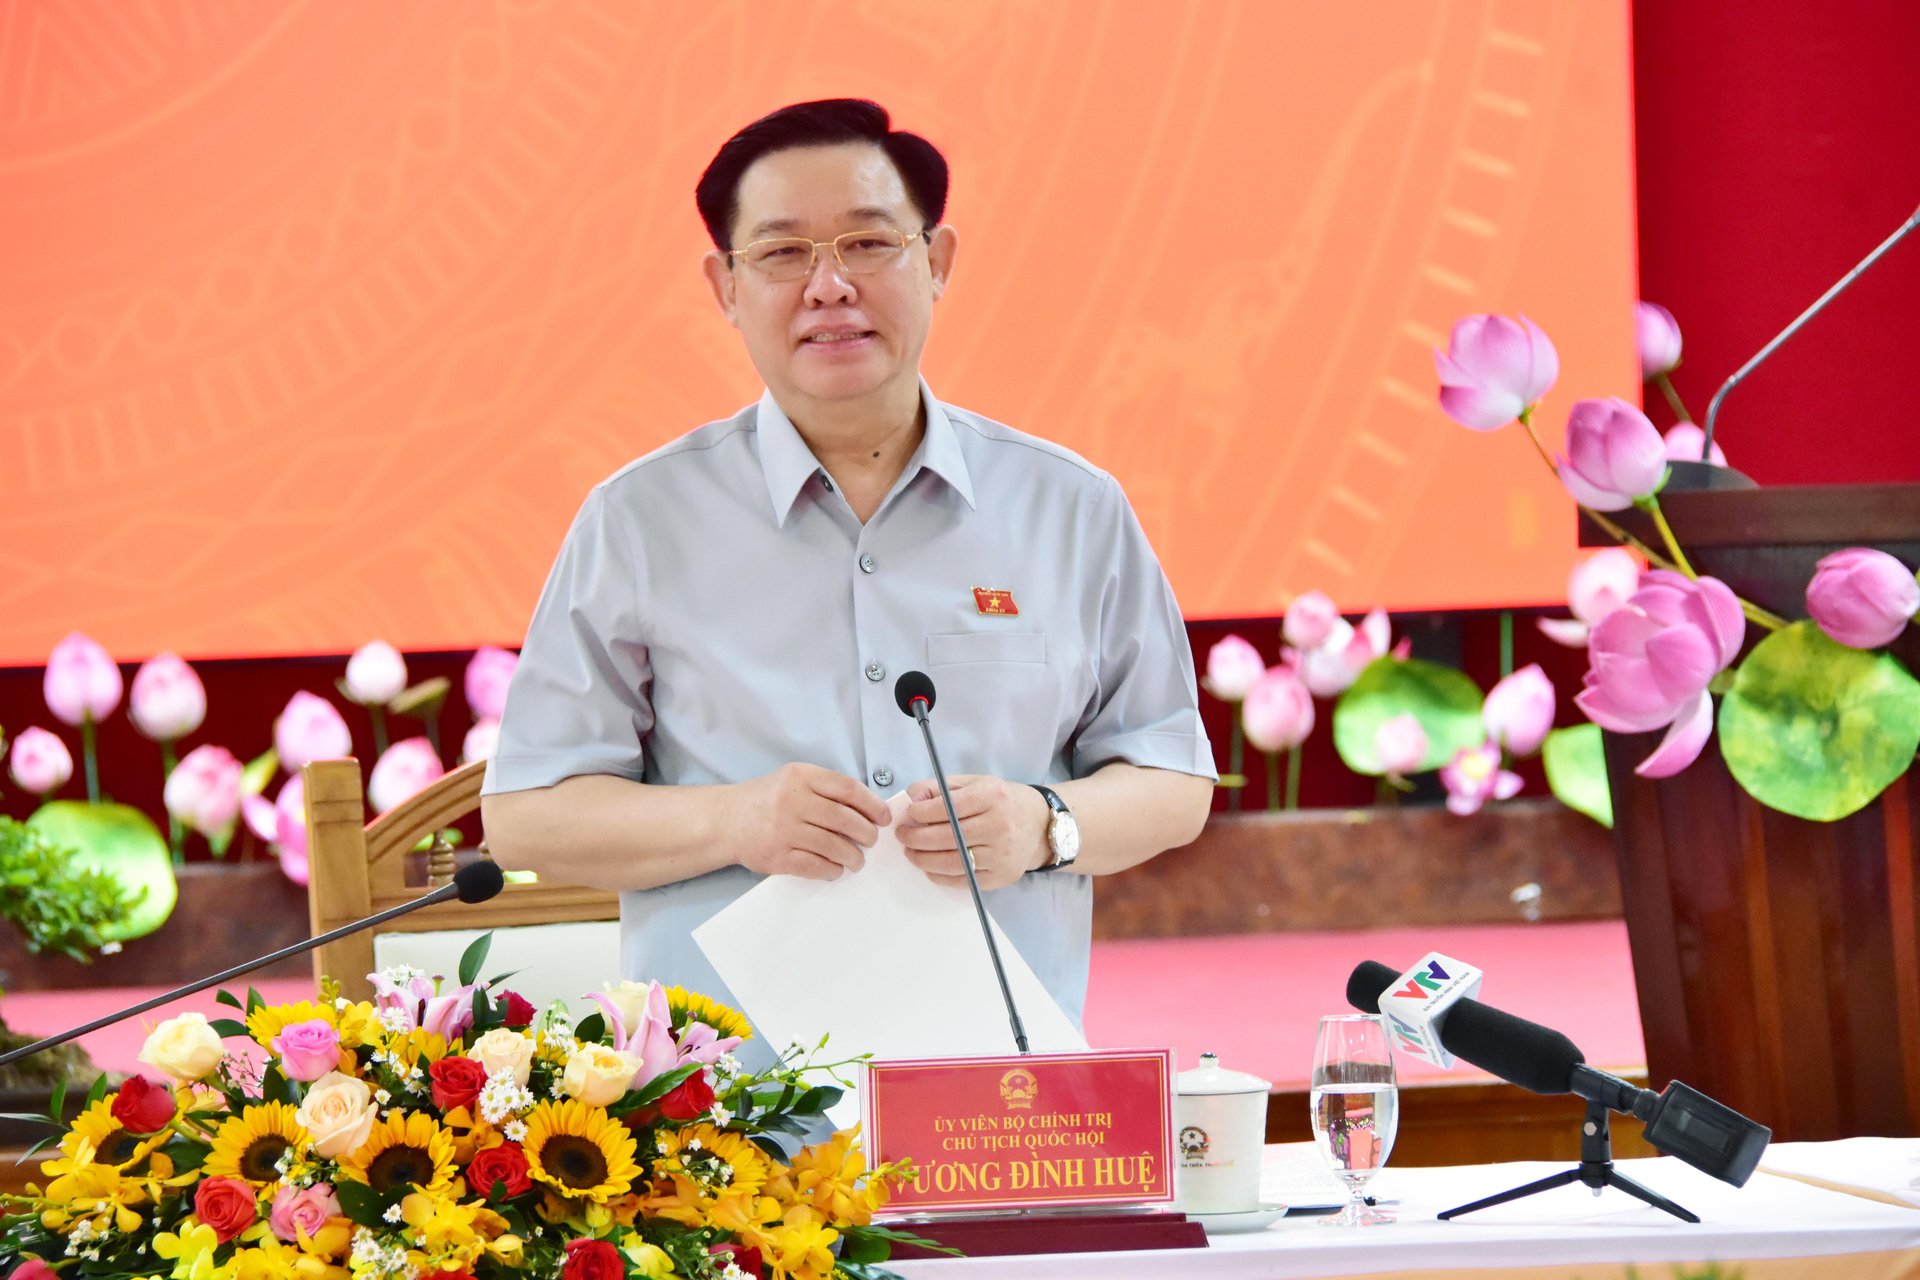 Chủ tịch Quốc hội Vương Đình Huệ ấn tượng với sự đổi thay của tỉnh Thừa Thiên Huế. Ảnh: Ngọc Minh Phan.